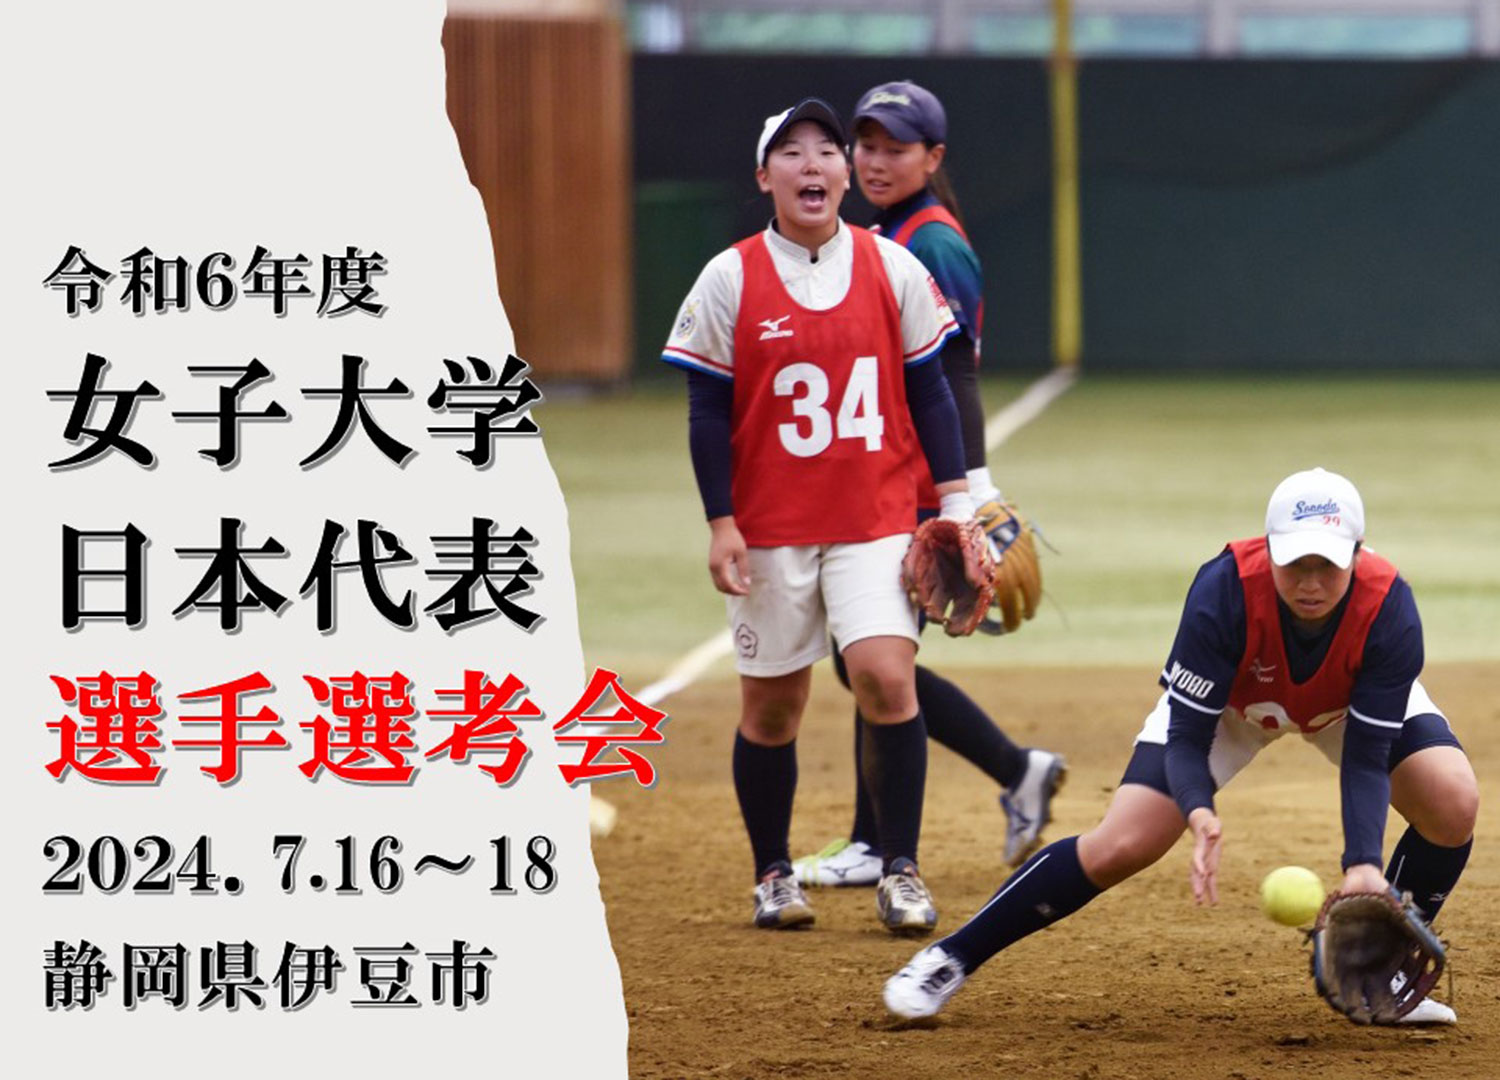 女子大学日本代表選手選考会